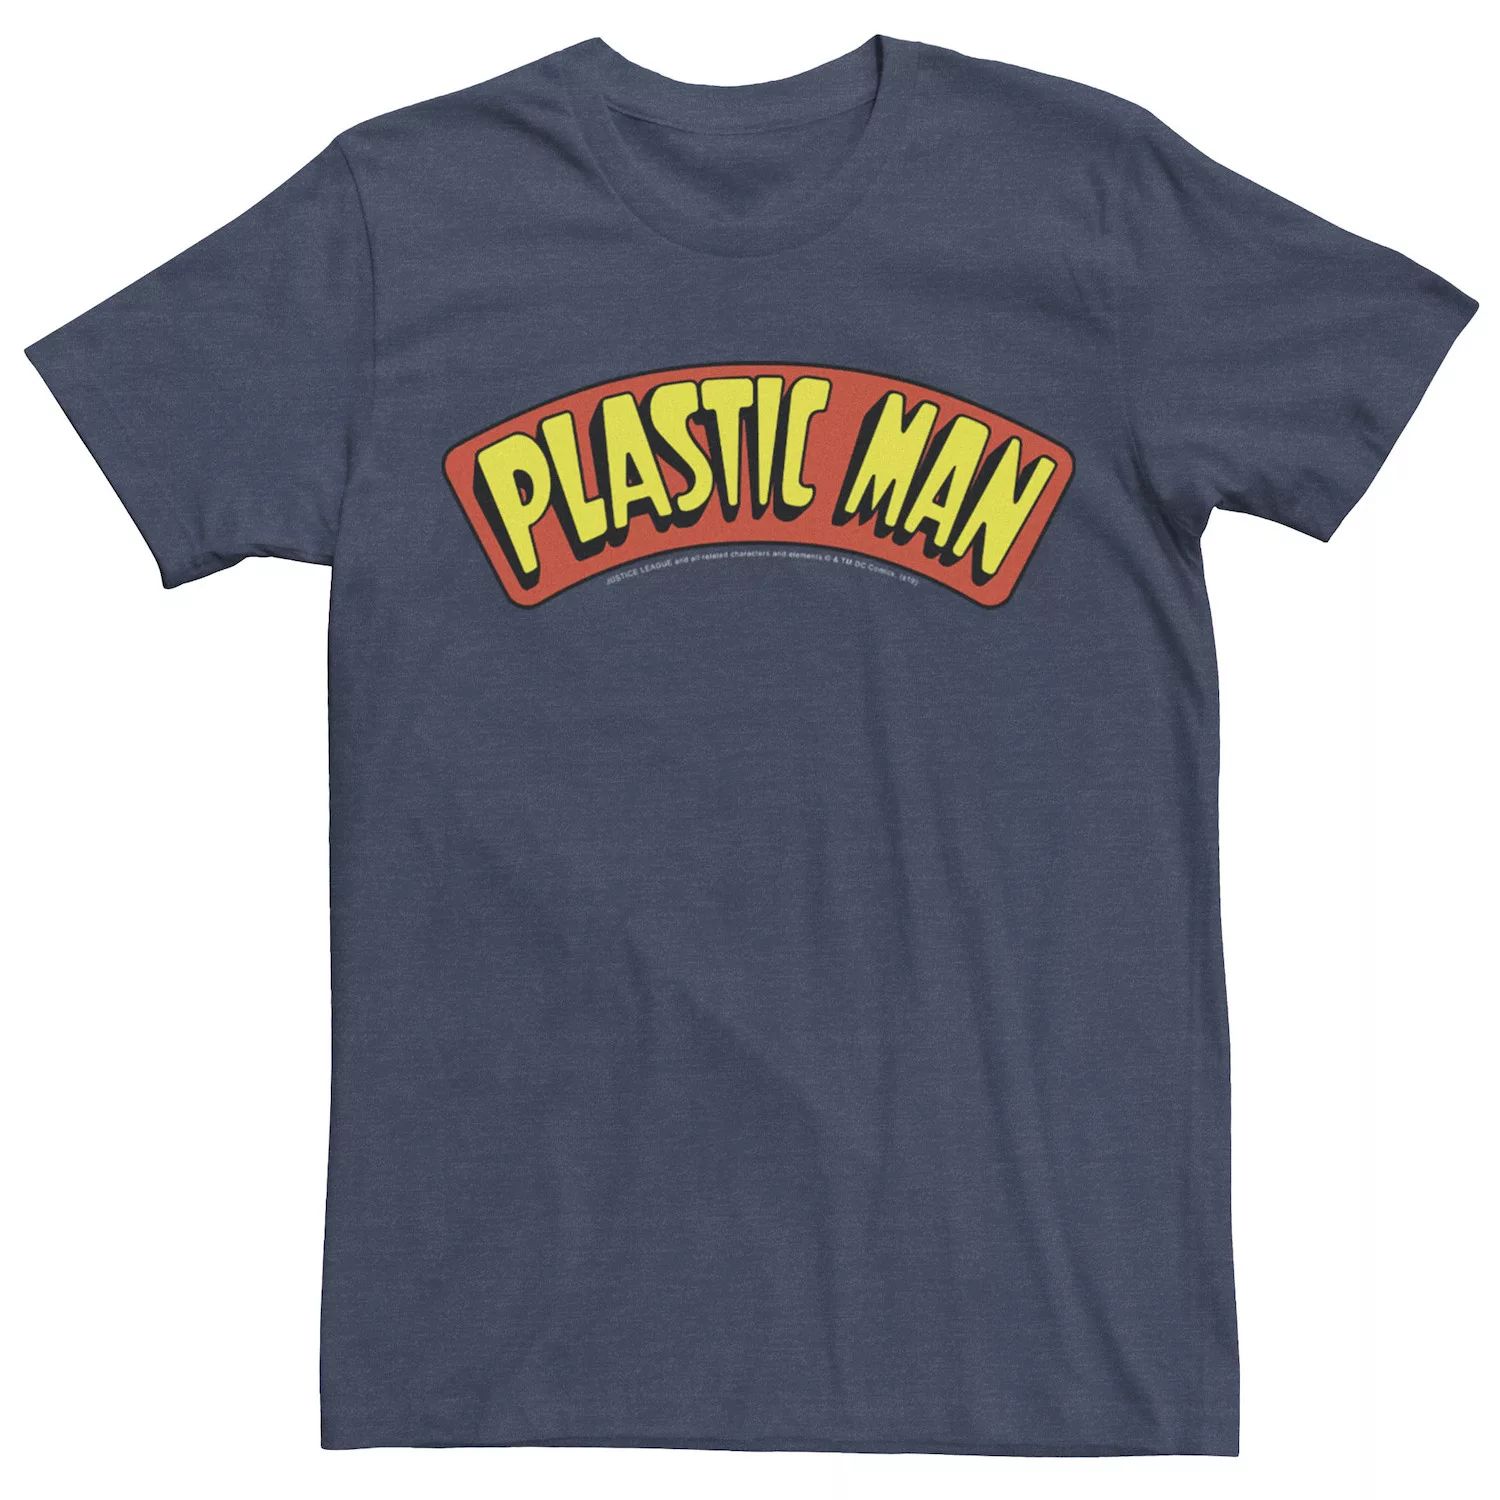 цена Мужская пластиковая футболка с текстовым логотипом и плакатом DC Comics